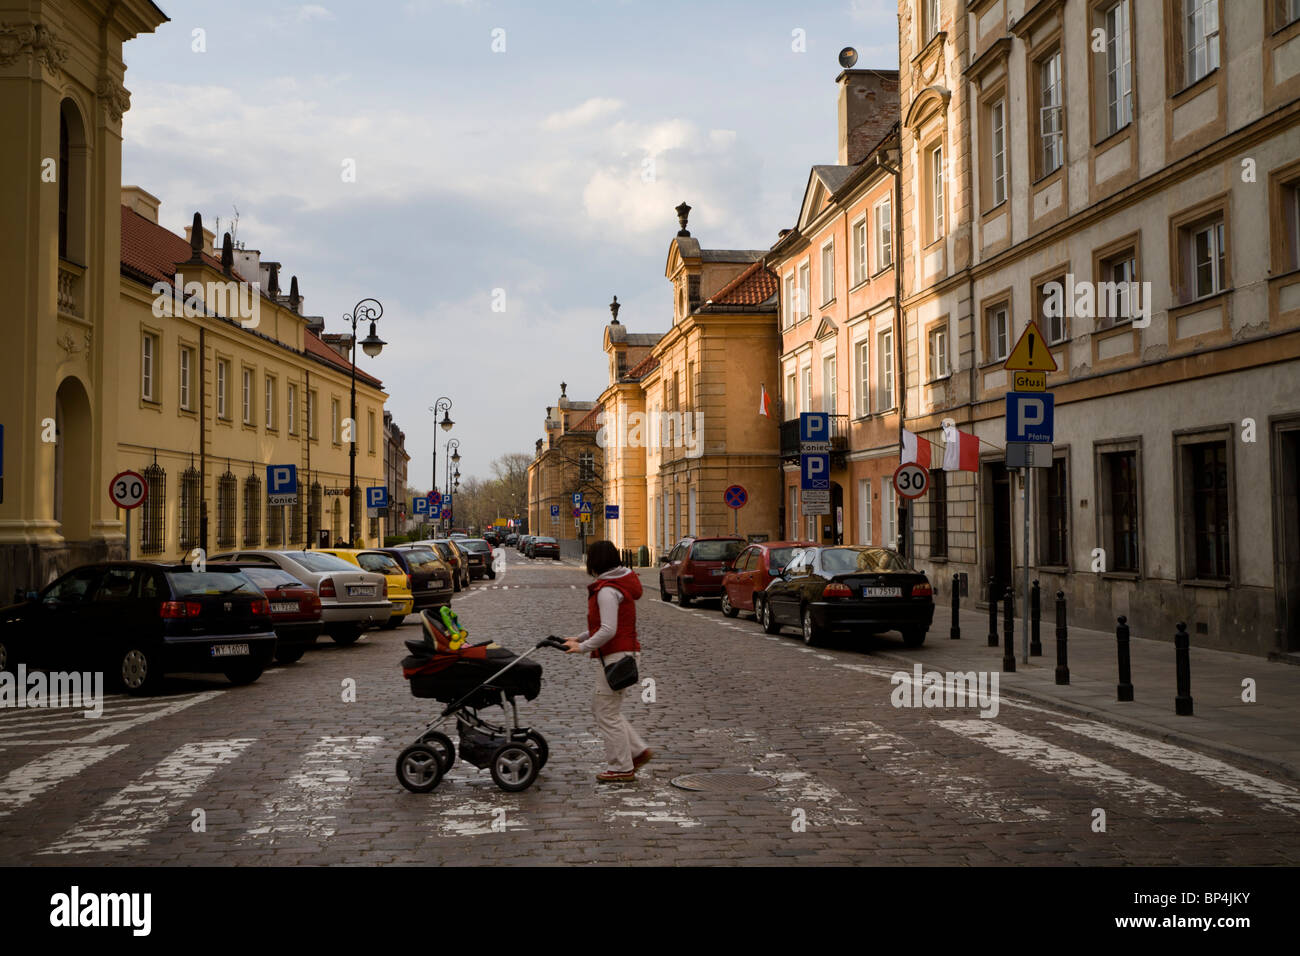 New Town, Warsaw Poland Stock Photo